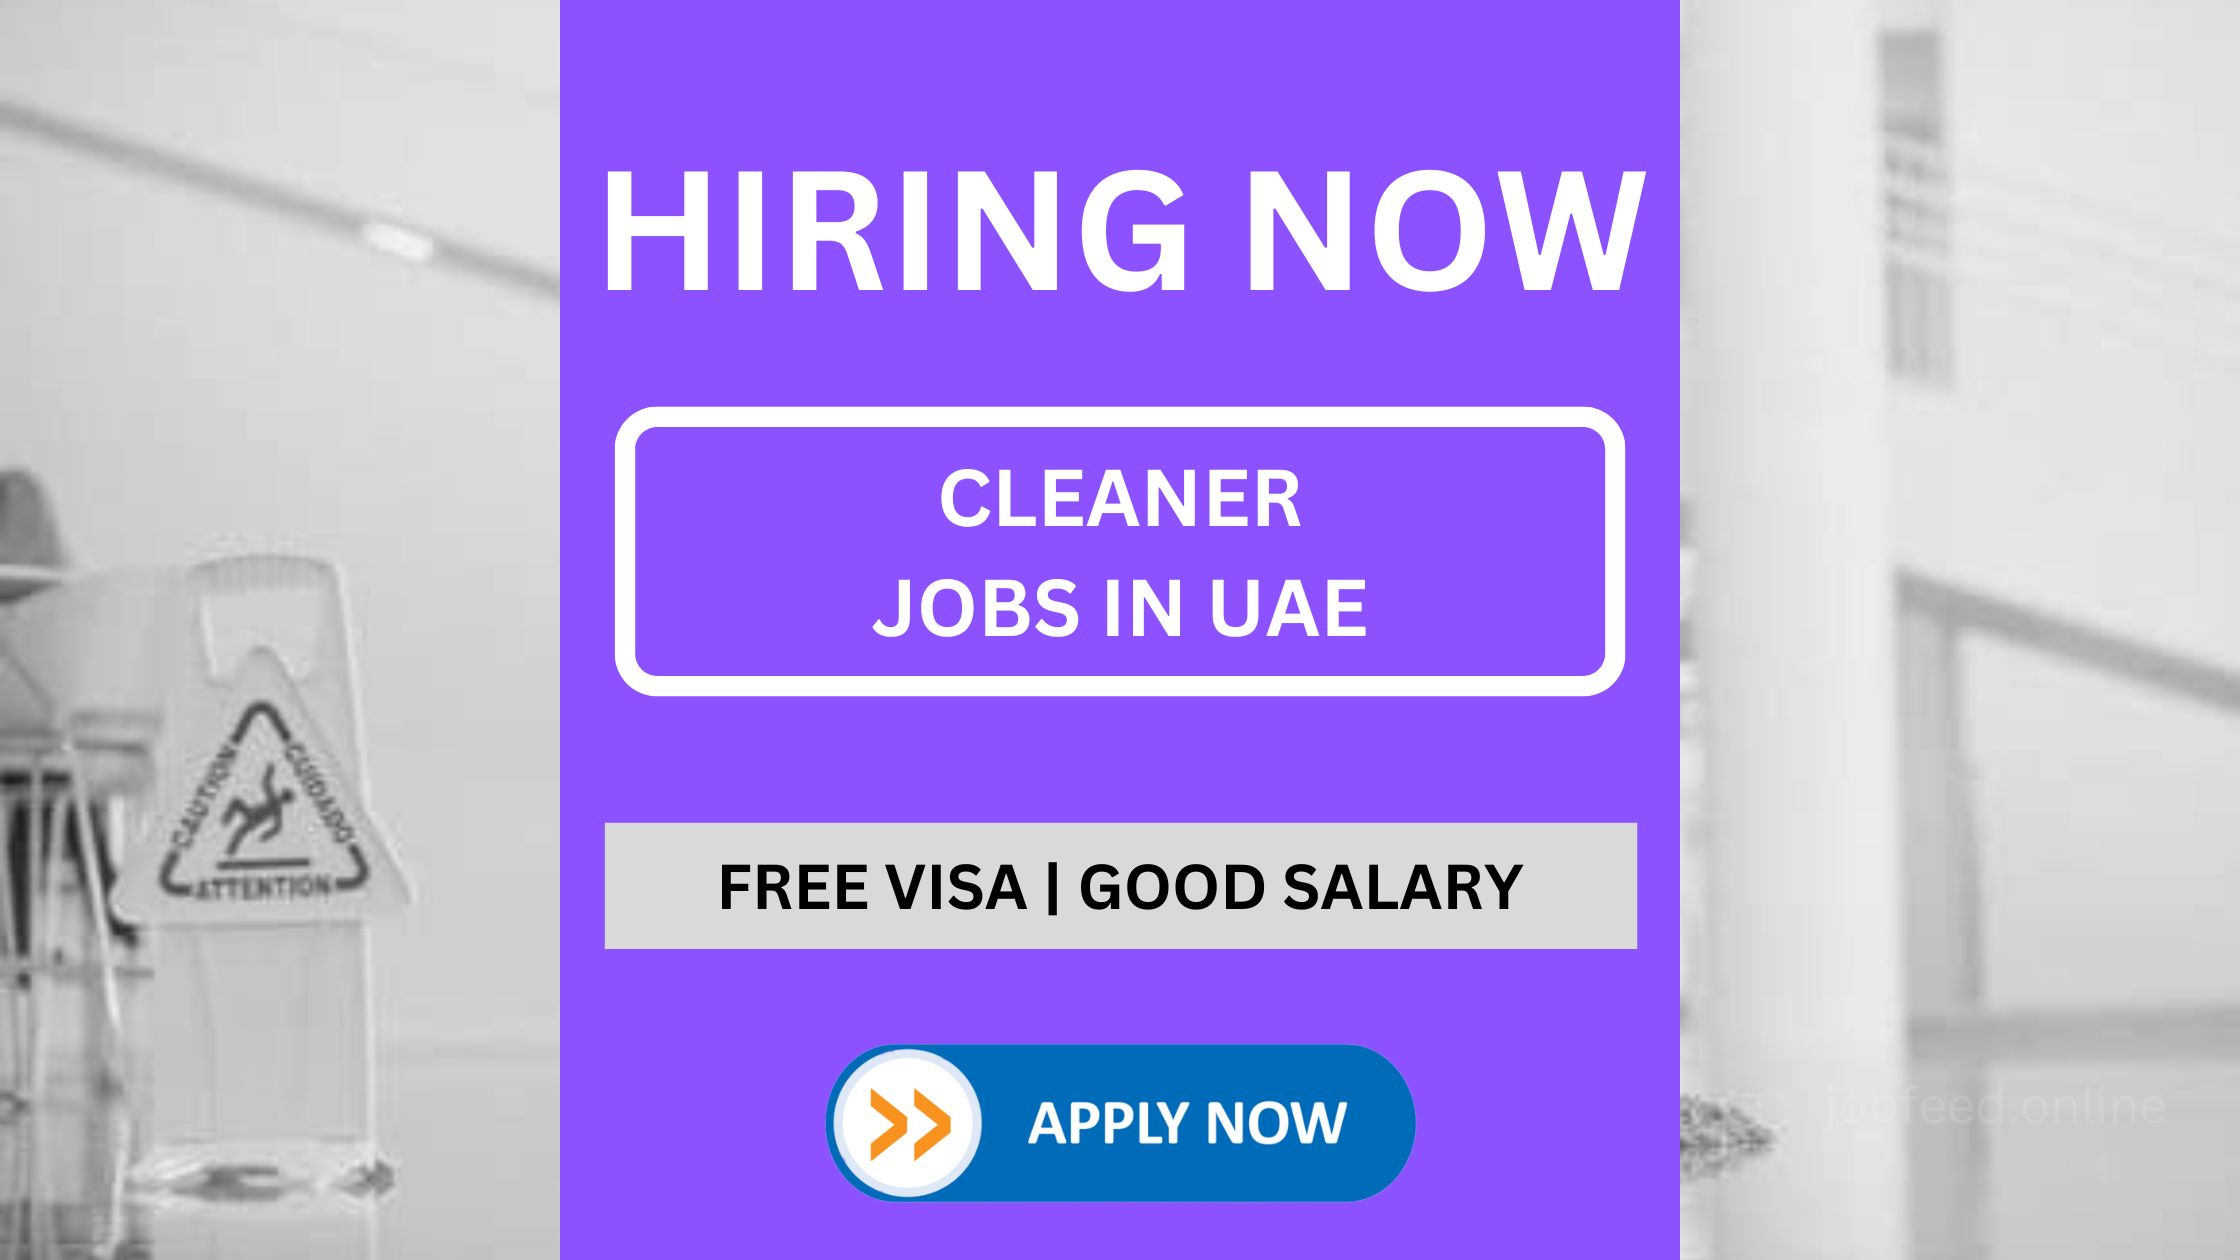 Cleaner JOBS IN UAE